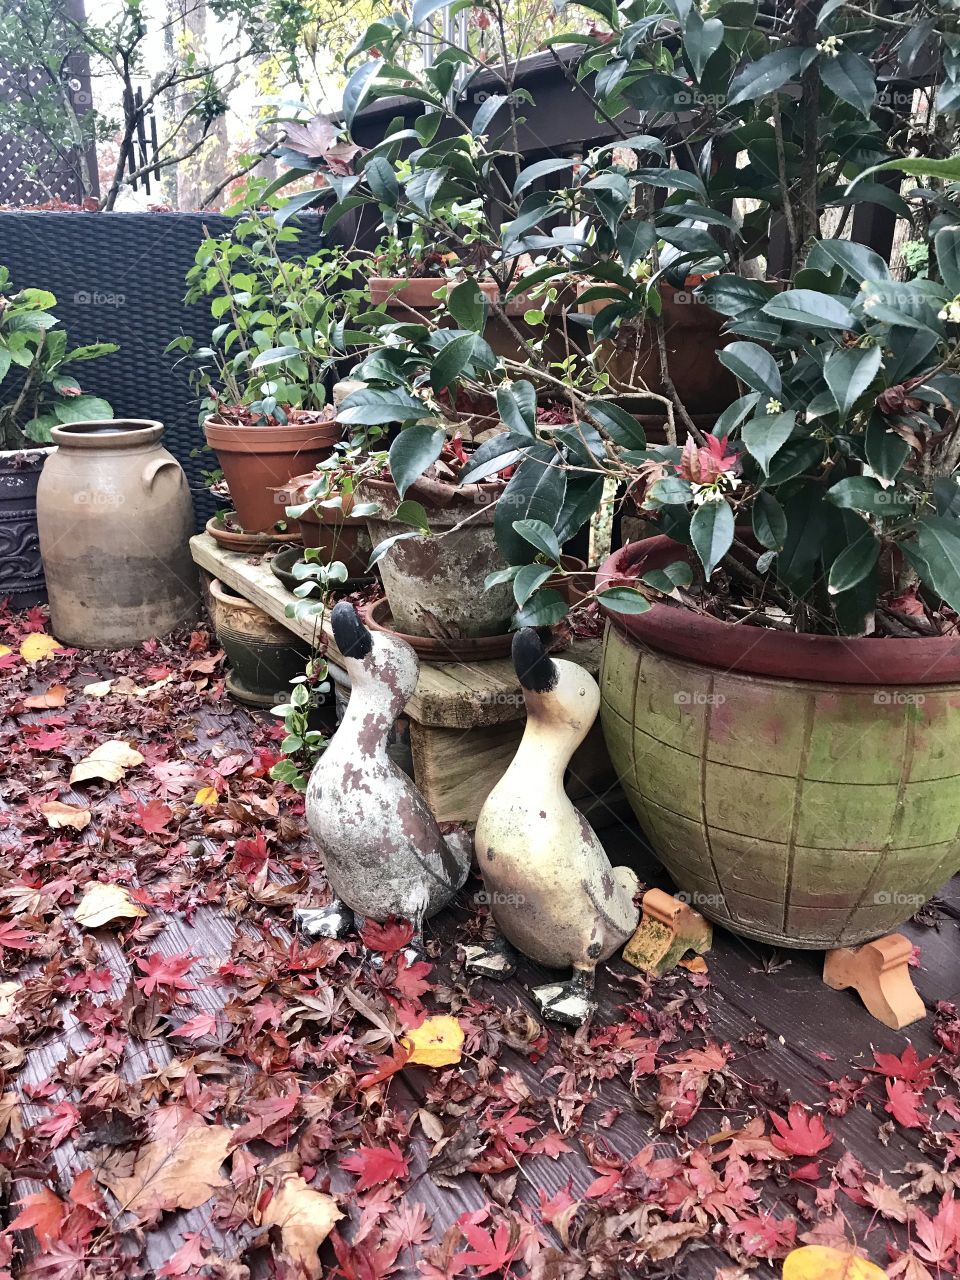 Two ducks 